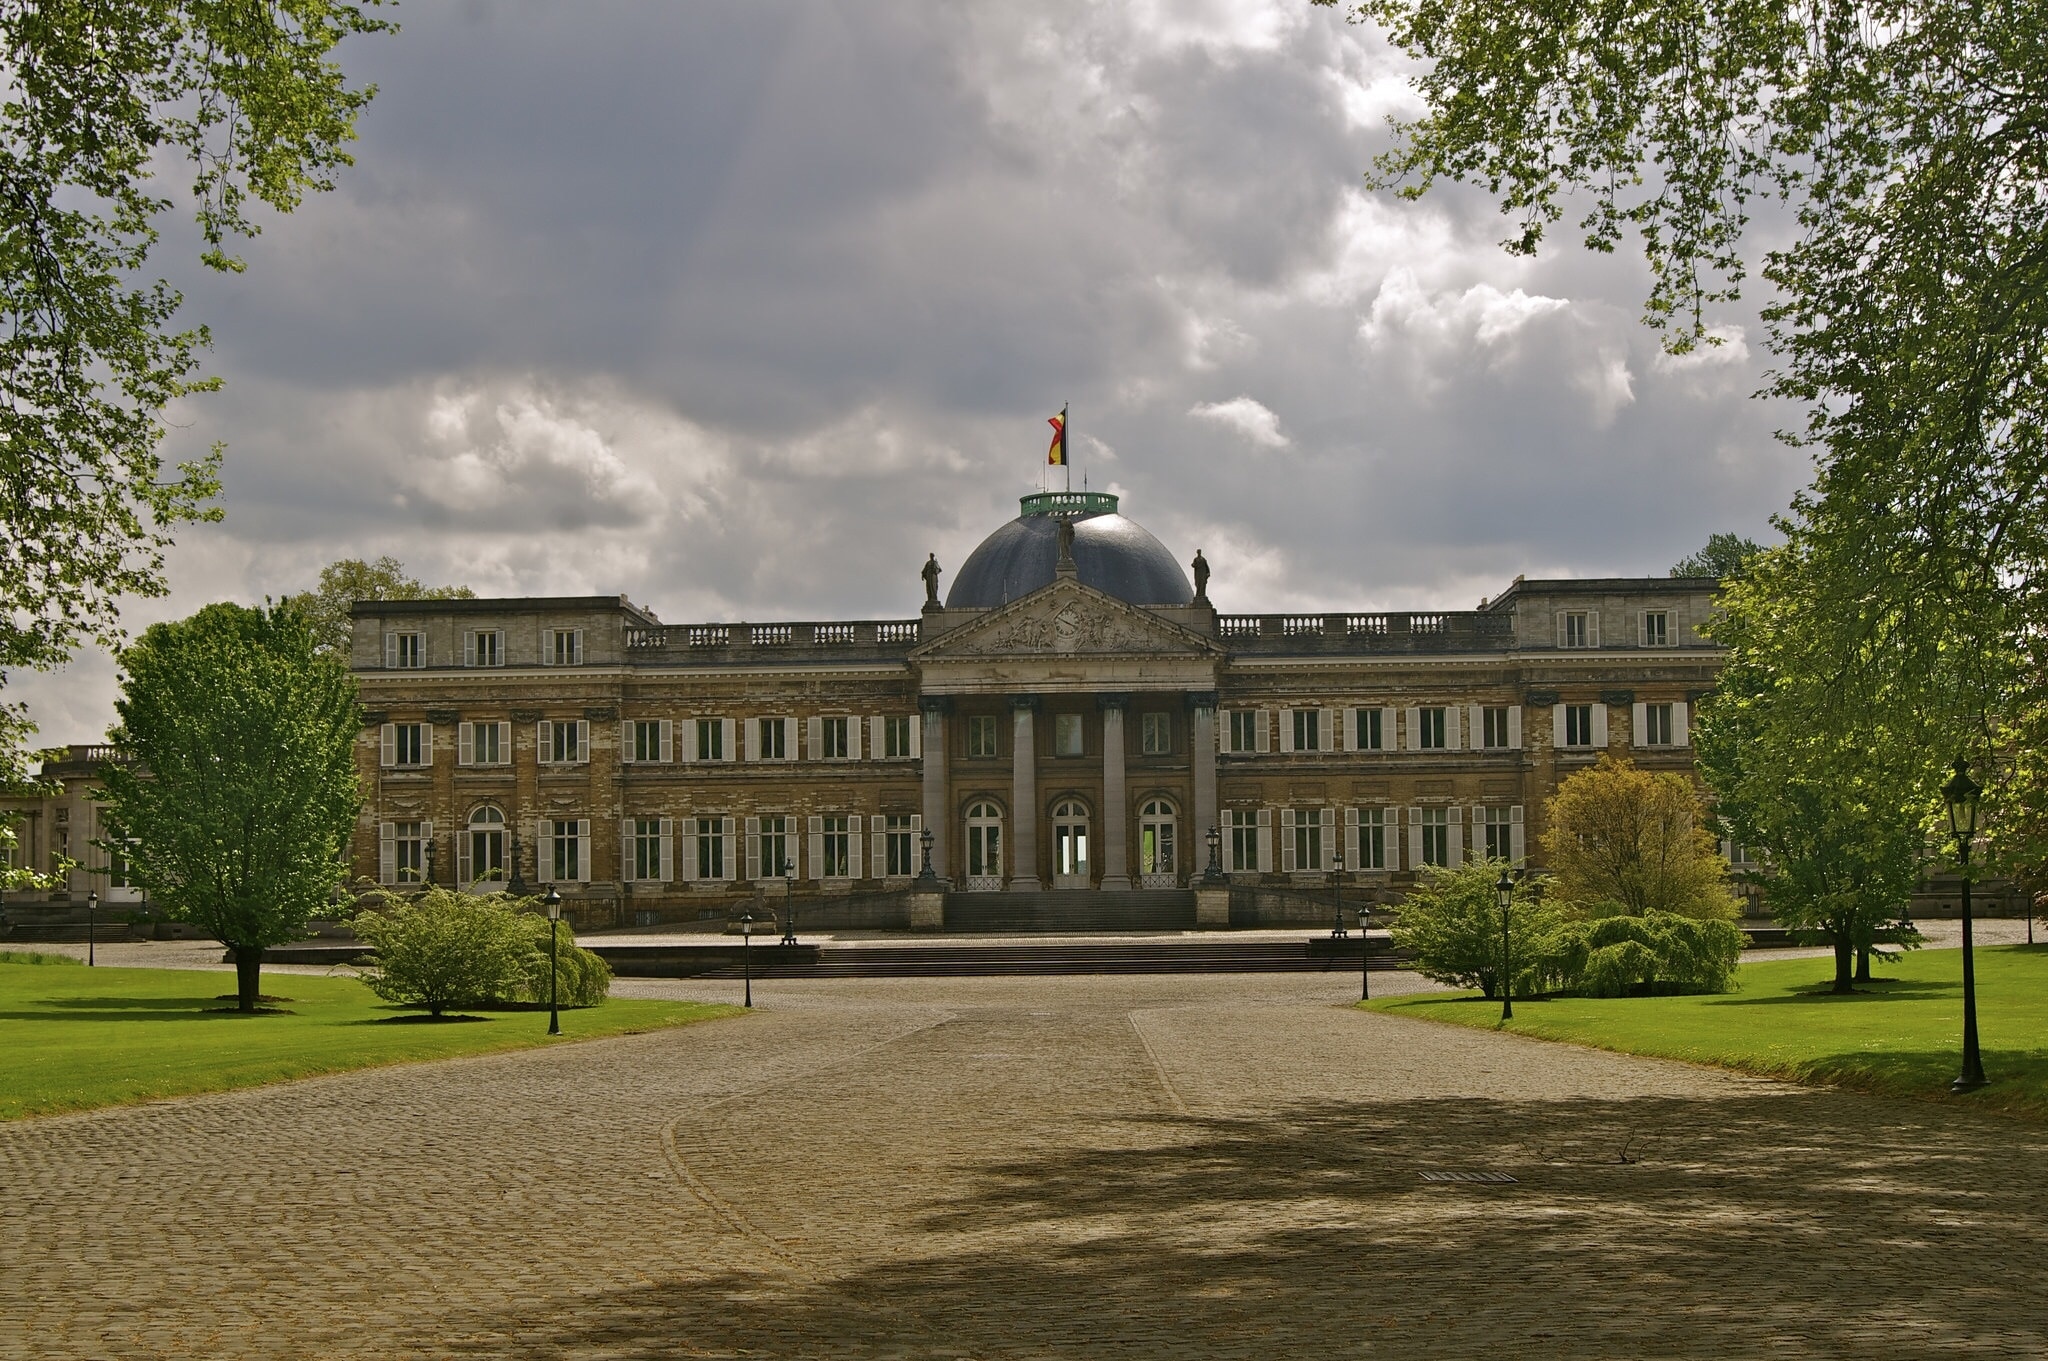 Royal Palace of Laken